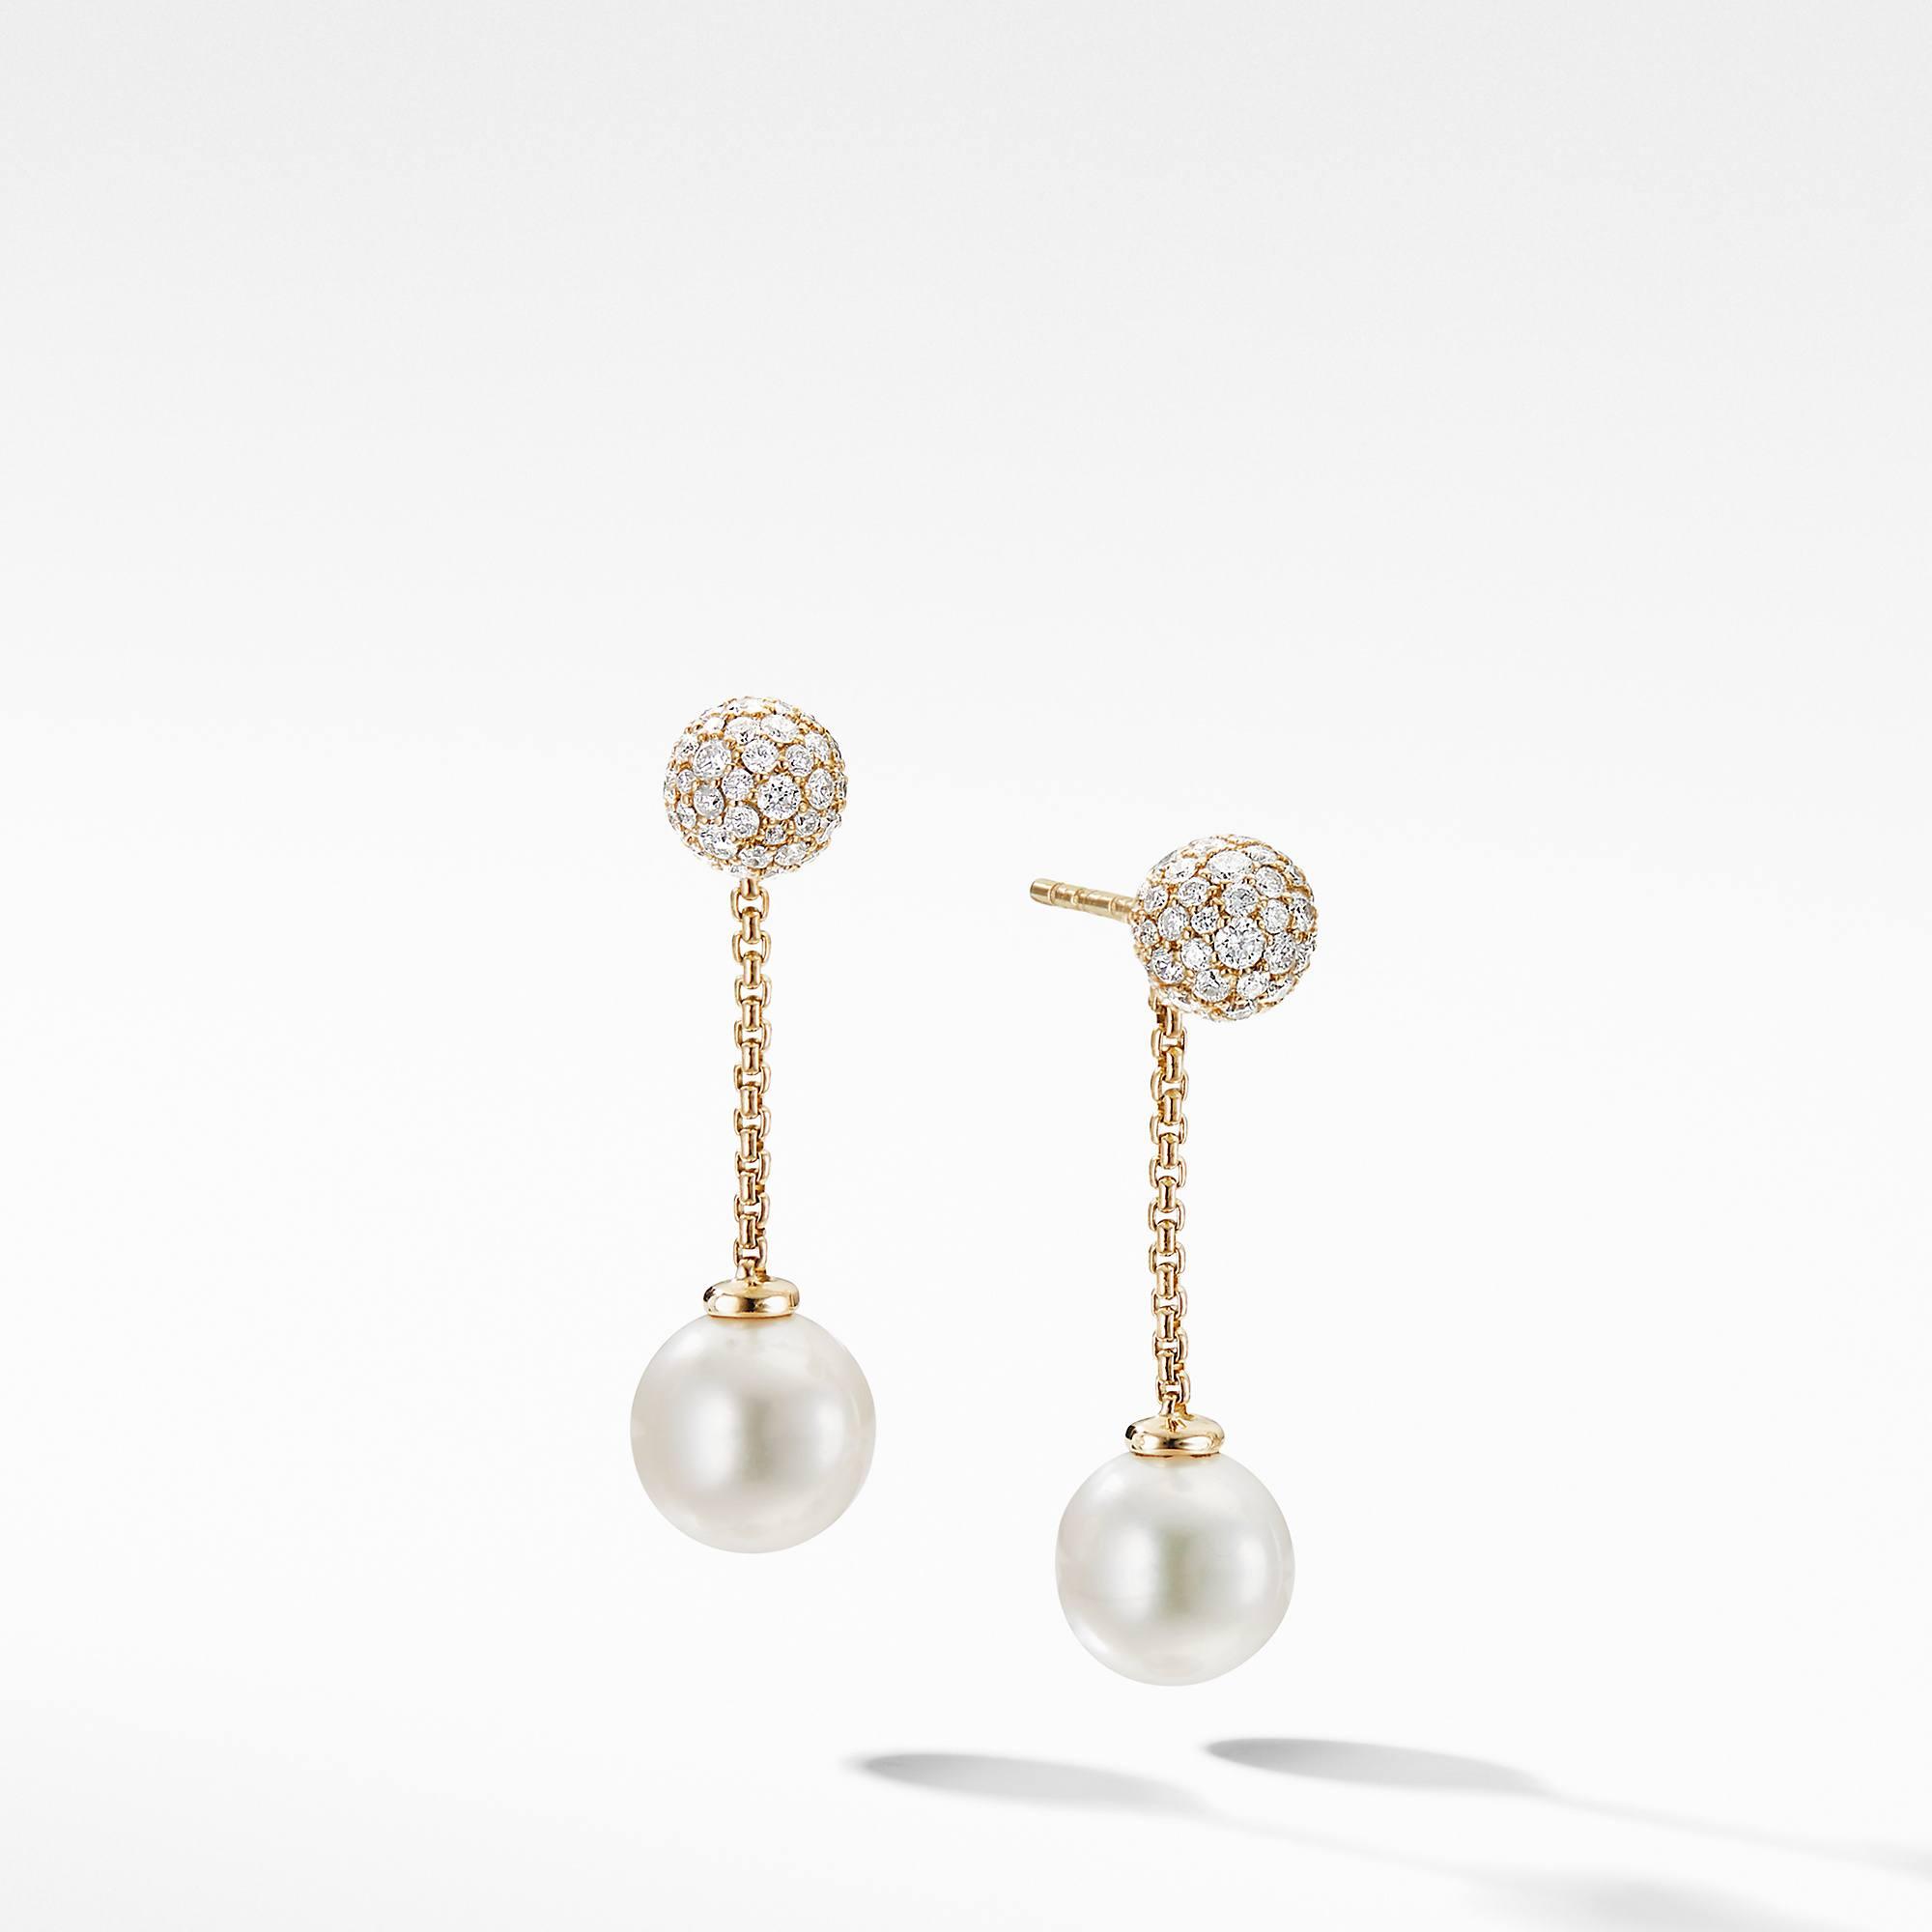 David Yurman Solari Chain Drop Earring in 18k Yellow Gold with Pearls and Diamonds